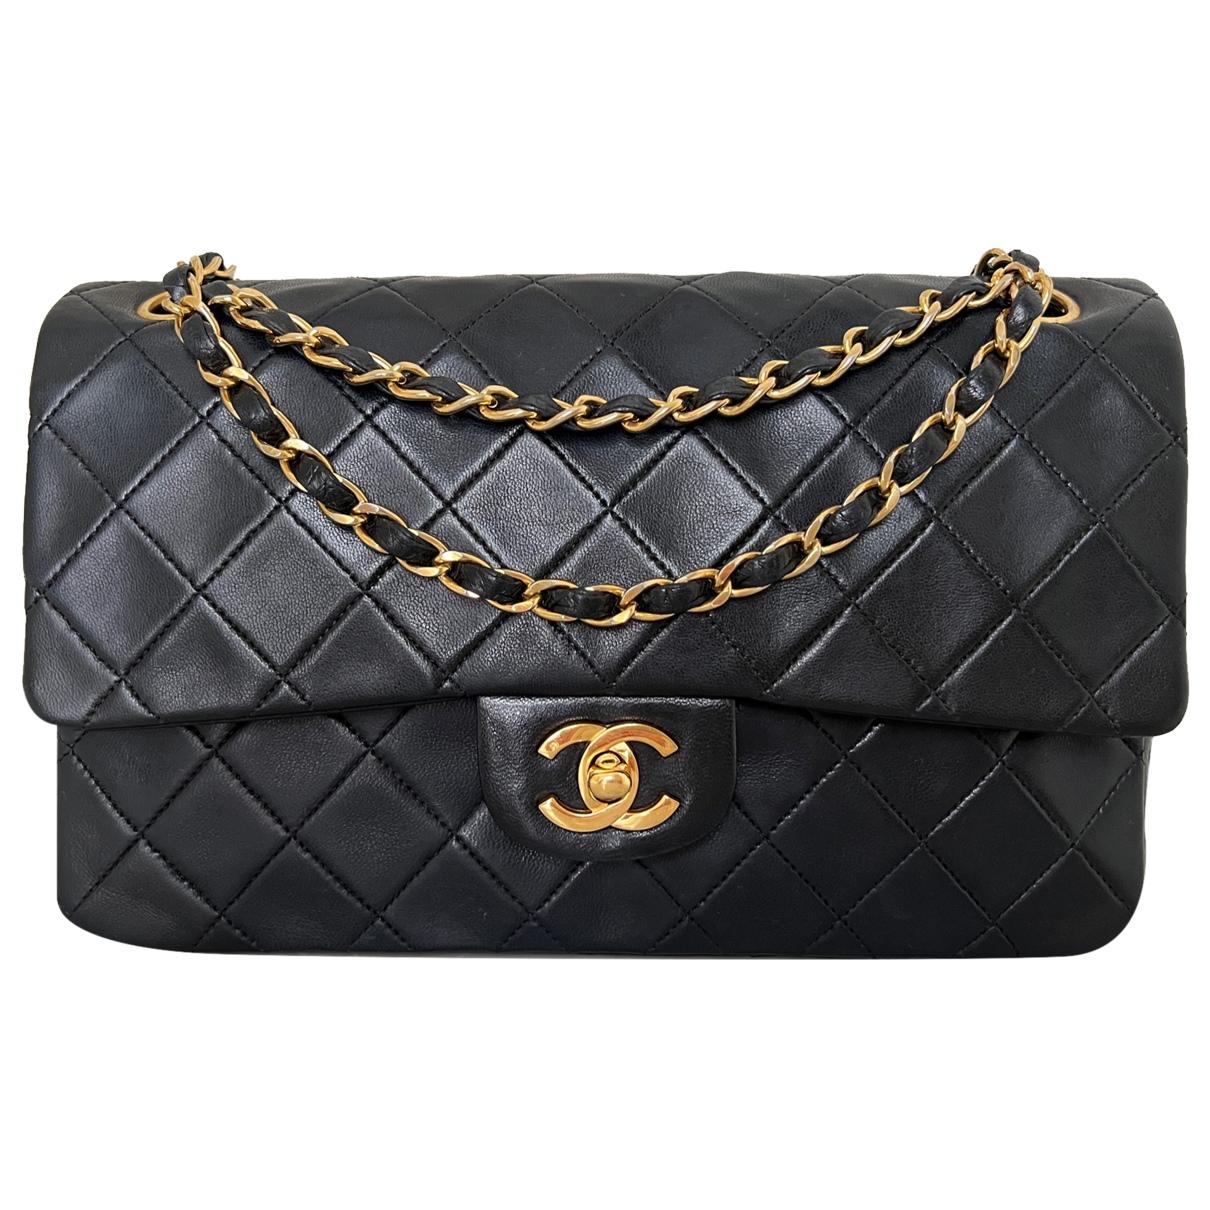 Sac vintage Chanel noir : occasion certifiée authentique